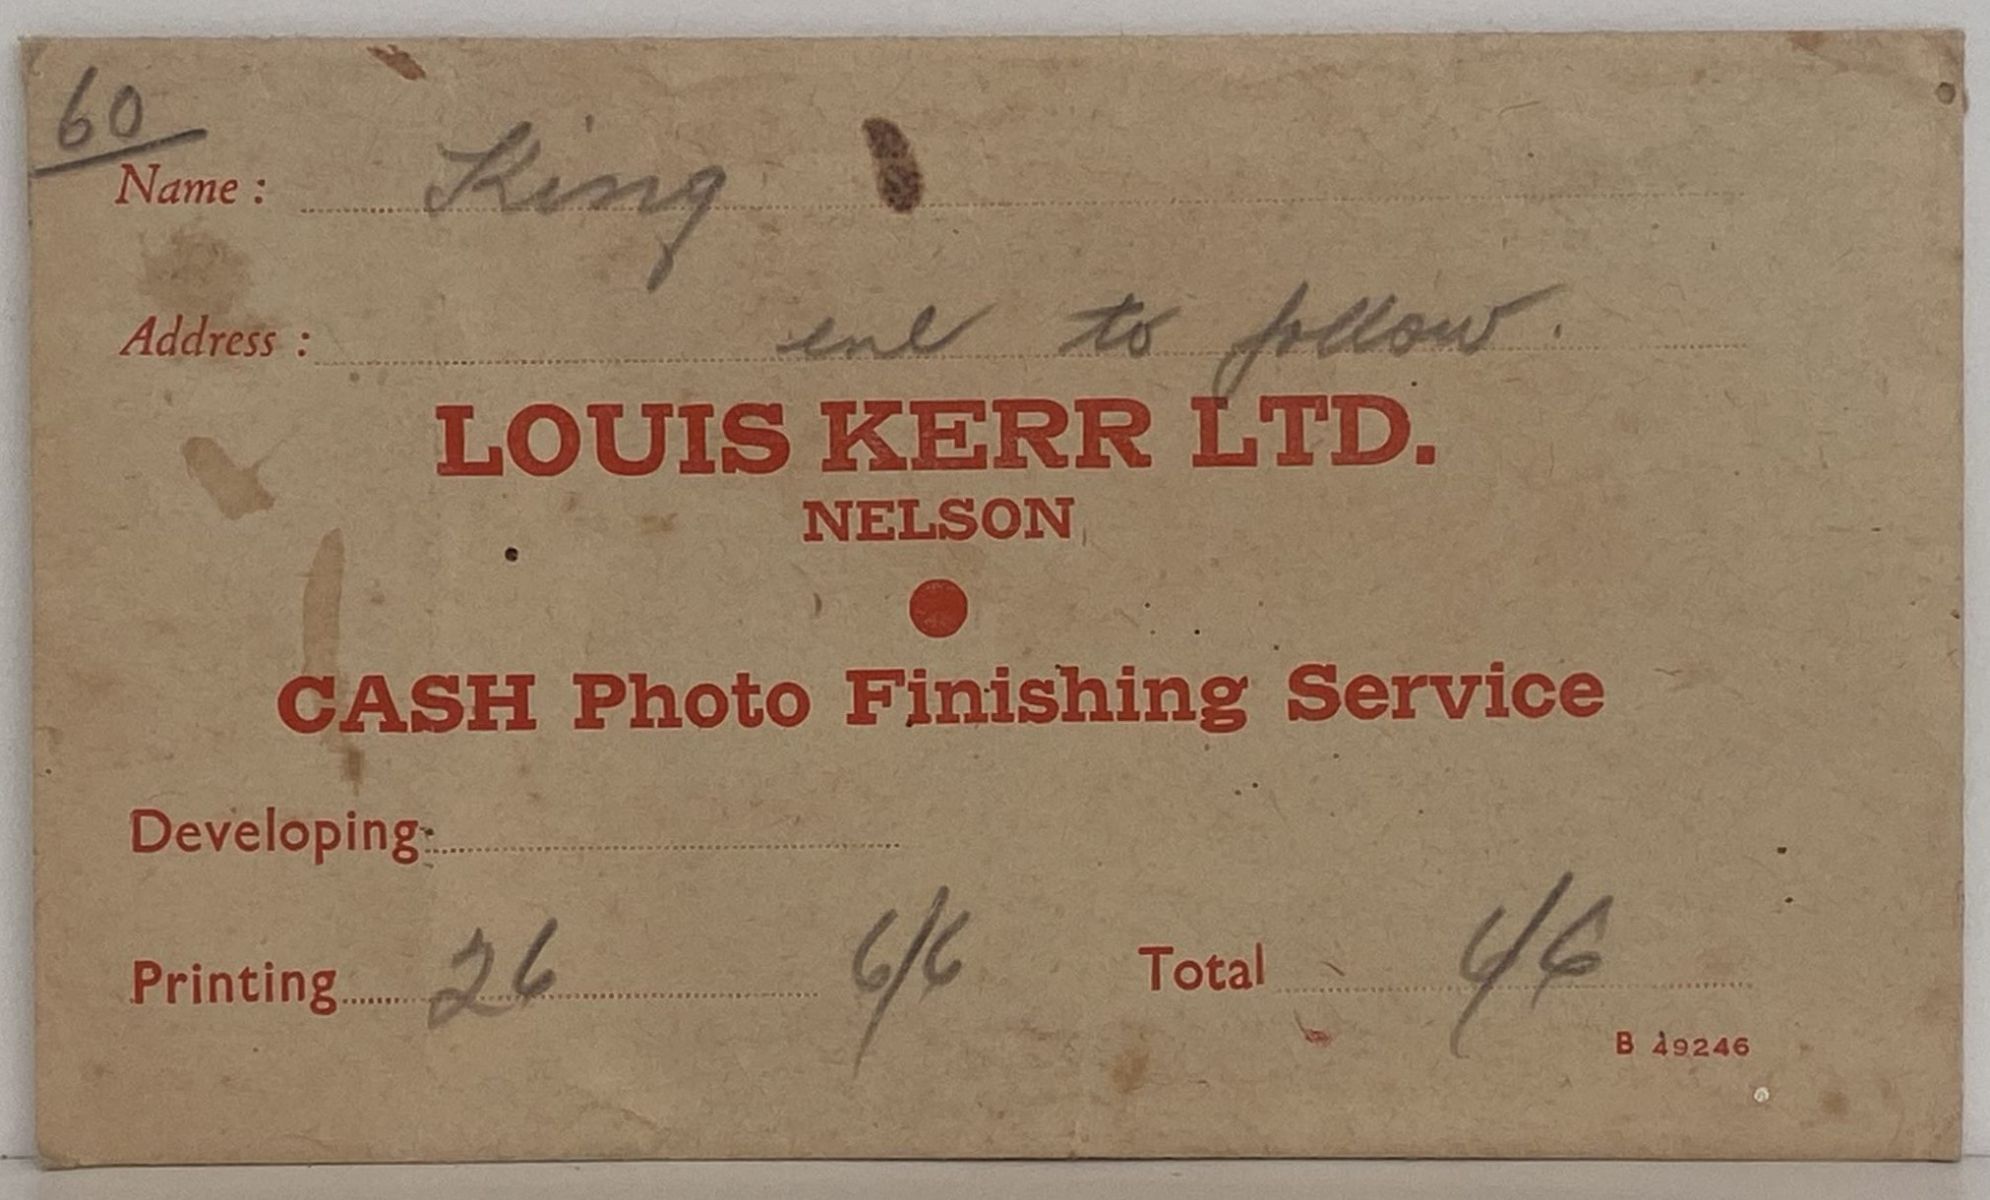 OLD PHOTO / NEGATIVE WALLET: Louis Kerr Ltd, Nelson